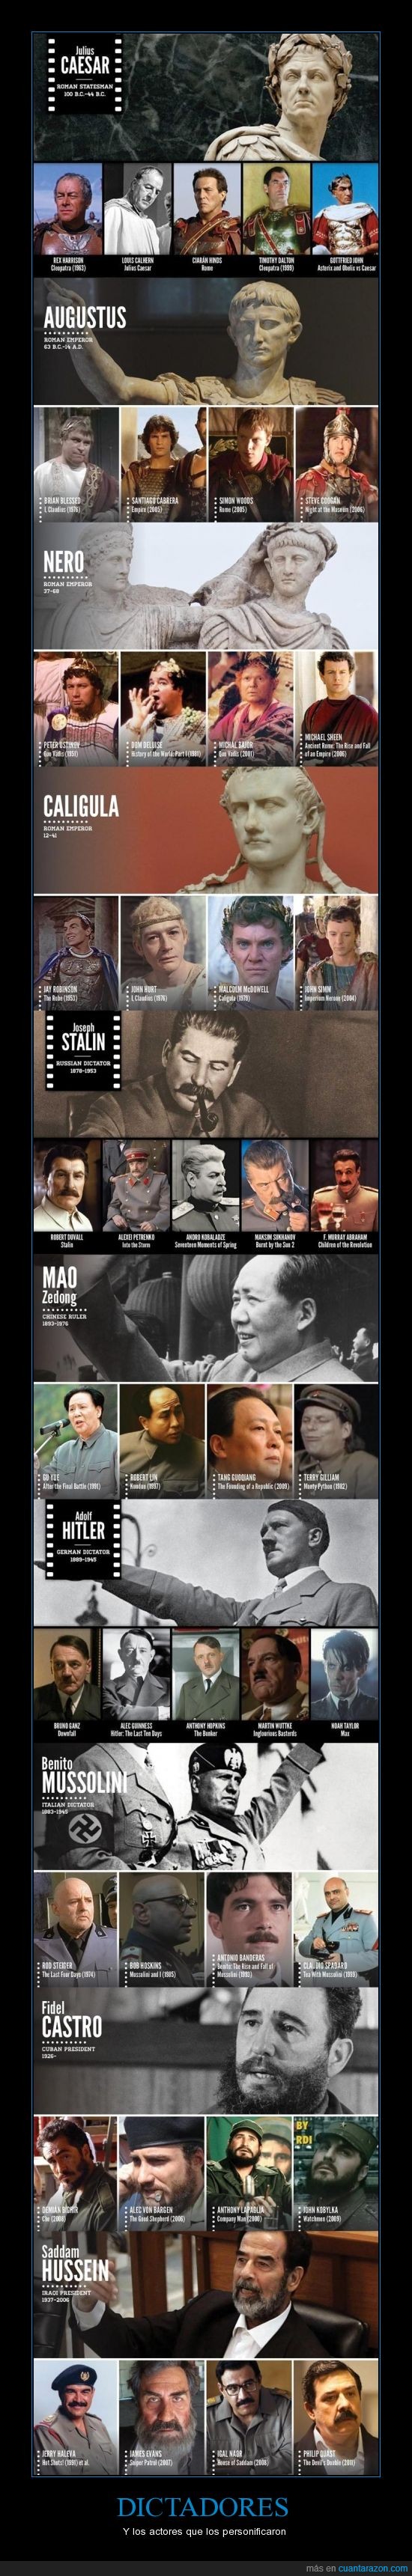 Actores,Asesinos,China,Comunismo,Dictadores,Fidel,Guerra,histoia,Hitler,Mao,matanza,muerte,Nazismo,peliculas,personificaron,Política,Saddam,Stalin